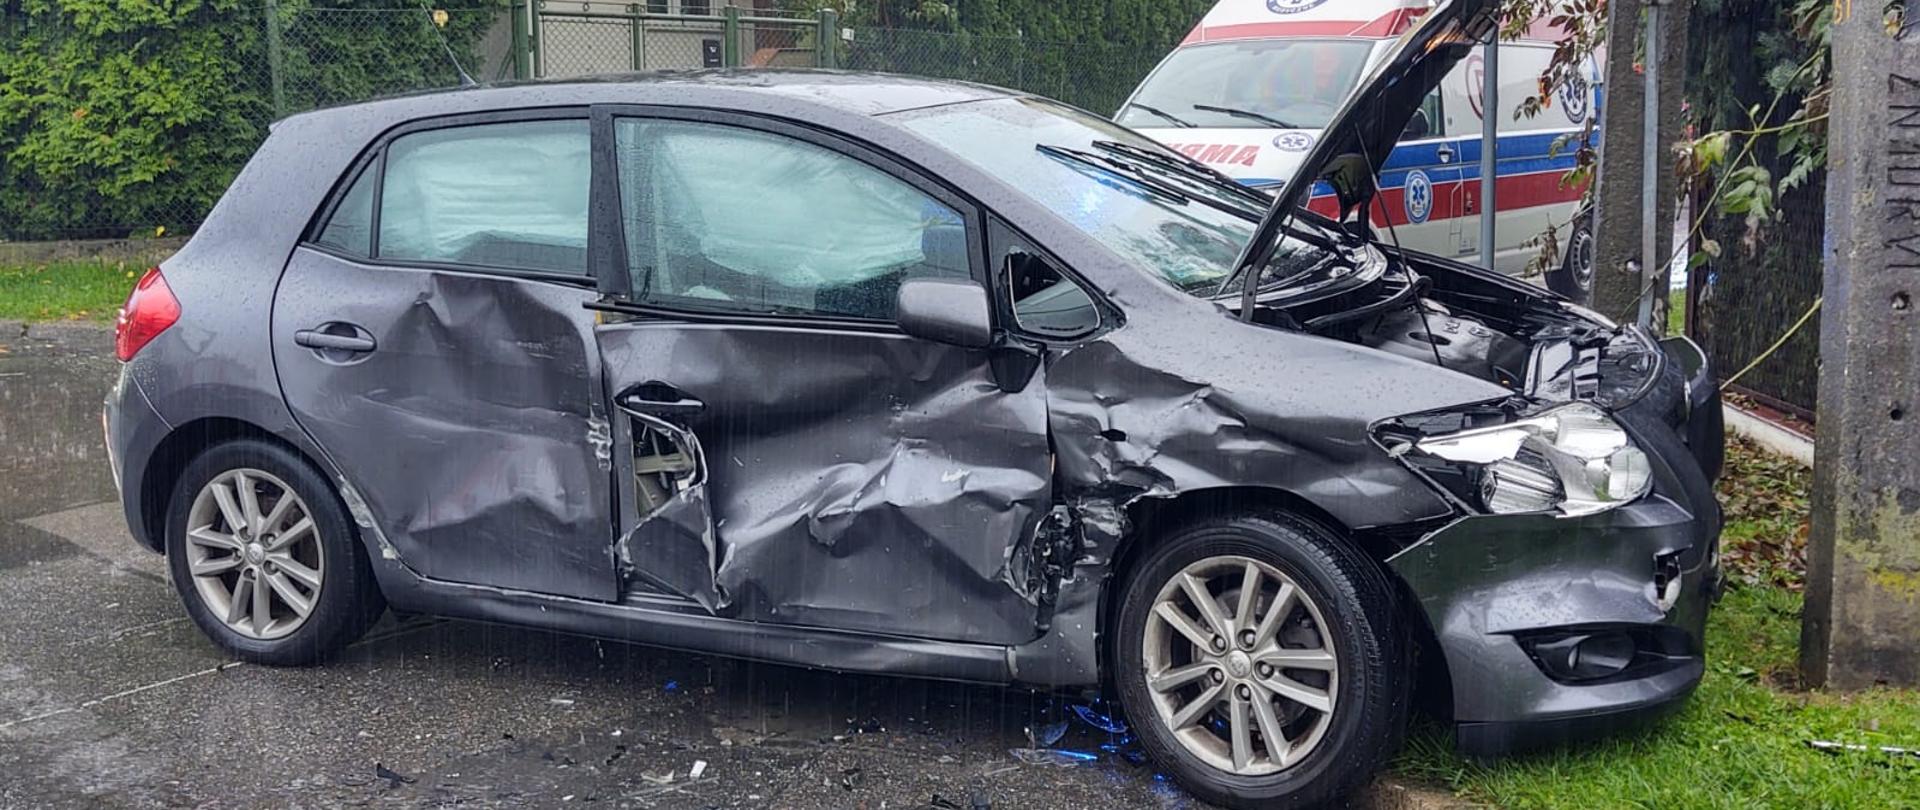 Widok prawej strony uszkodzonego samochodu przy słupie.